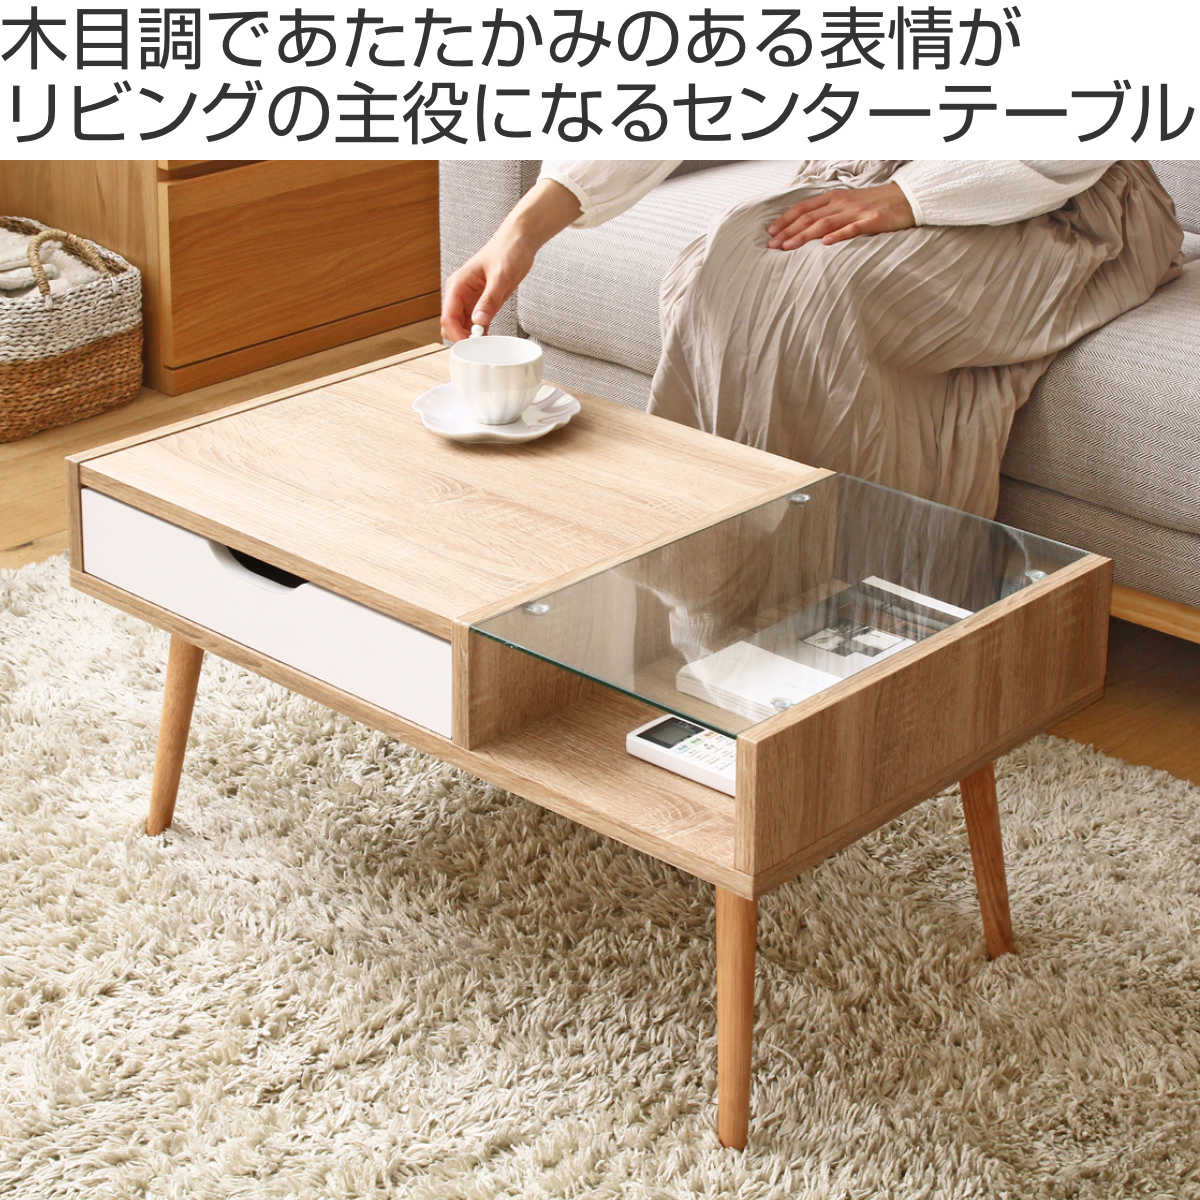 木製テーブル 75×45cm ナチュラル